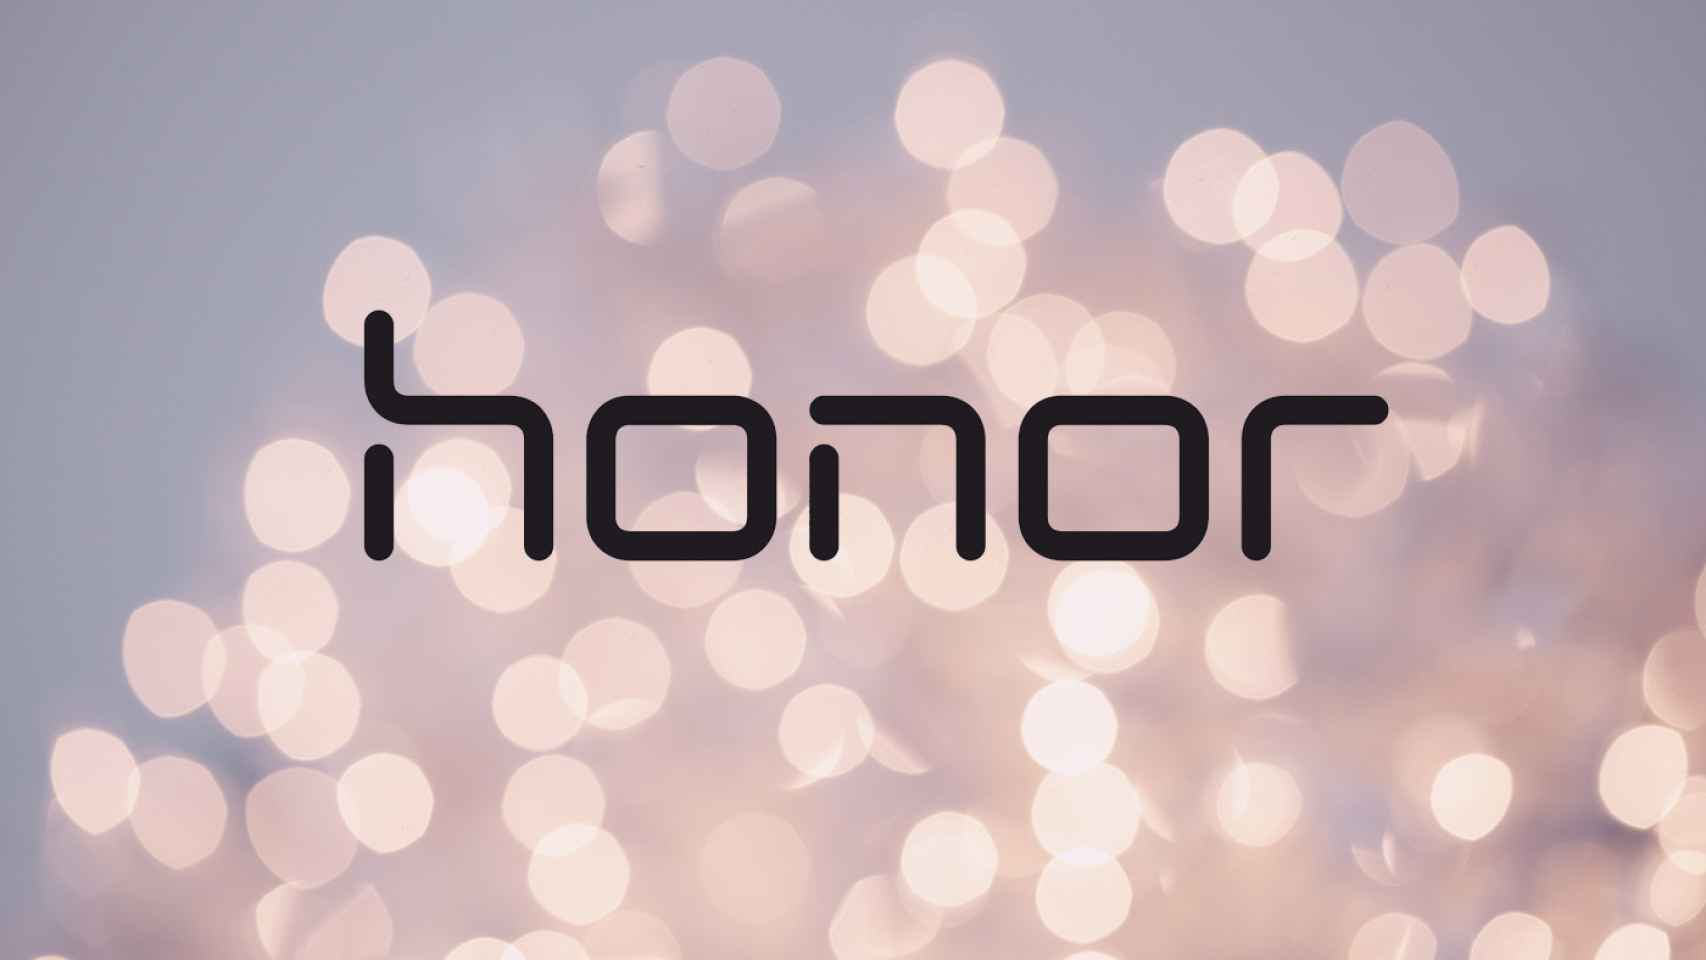 Huawei venderá Honor por más de 15.000 millones de dólares